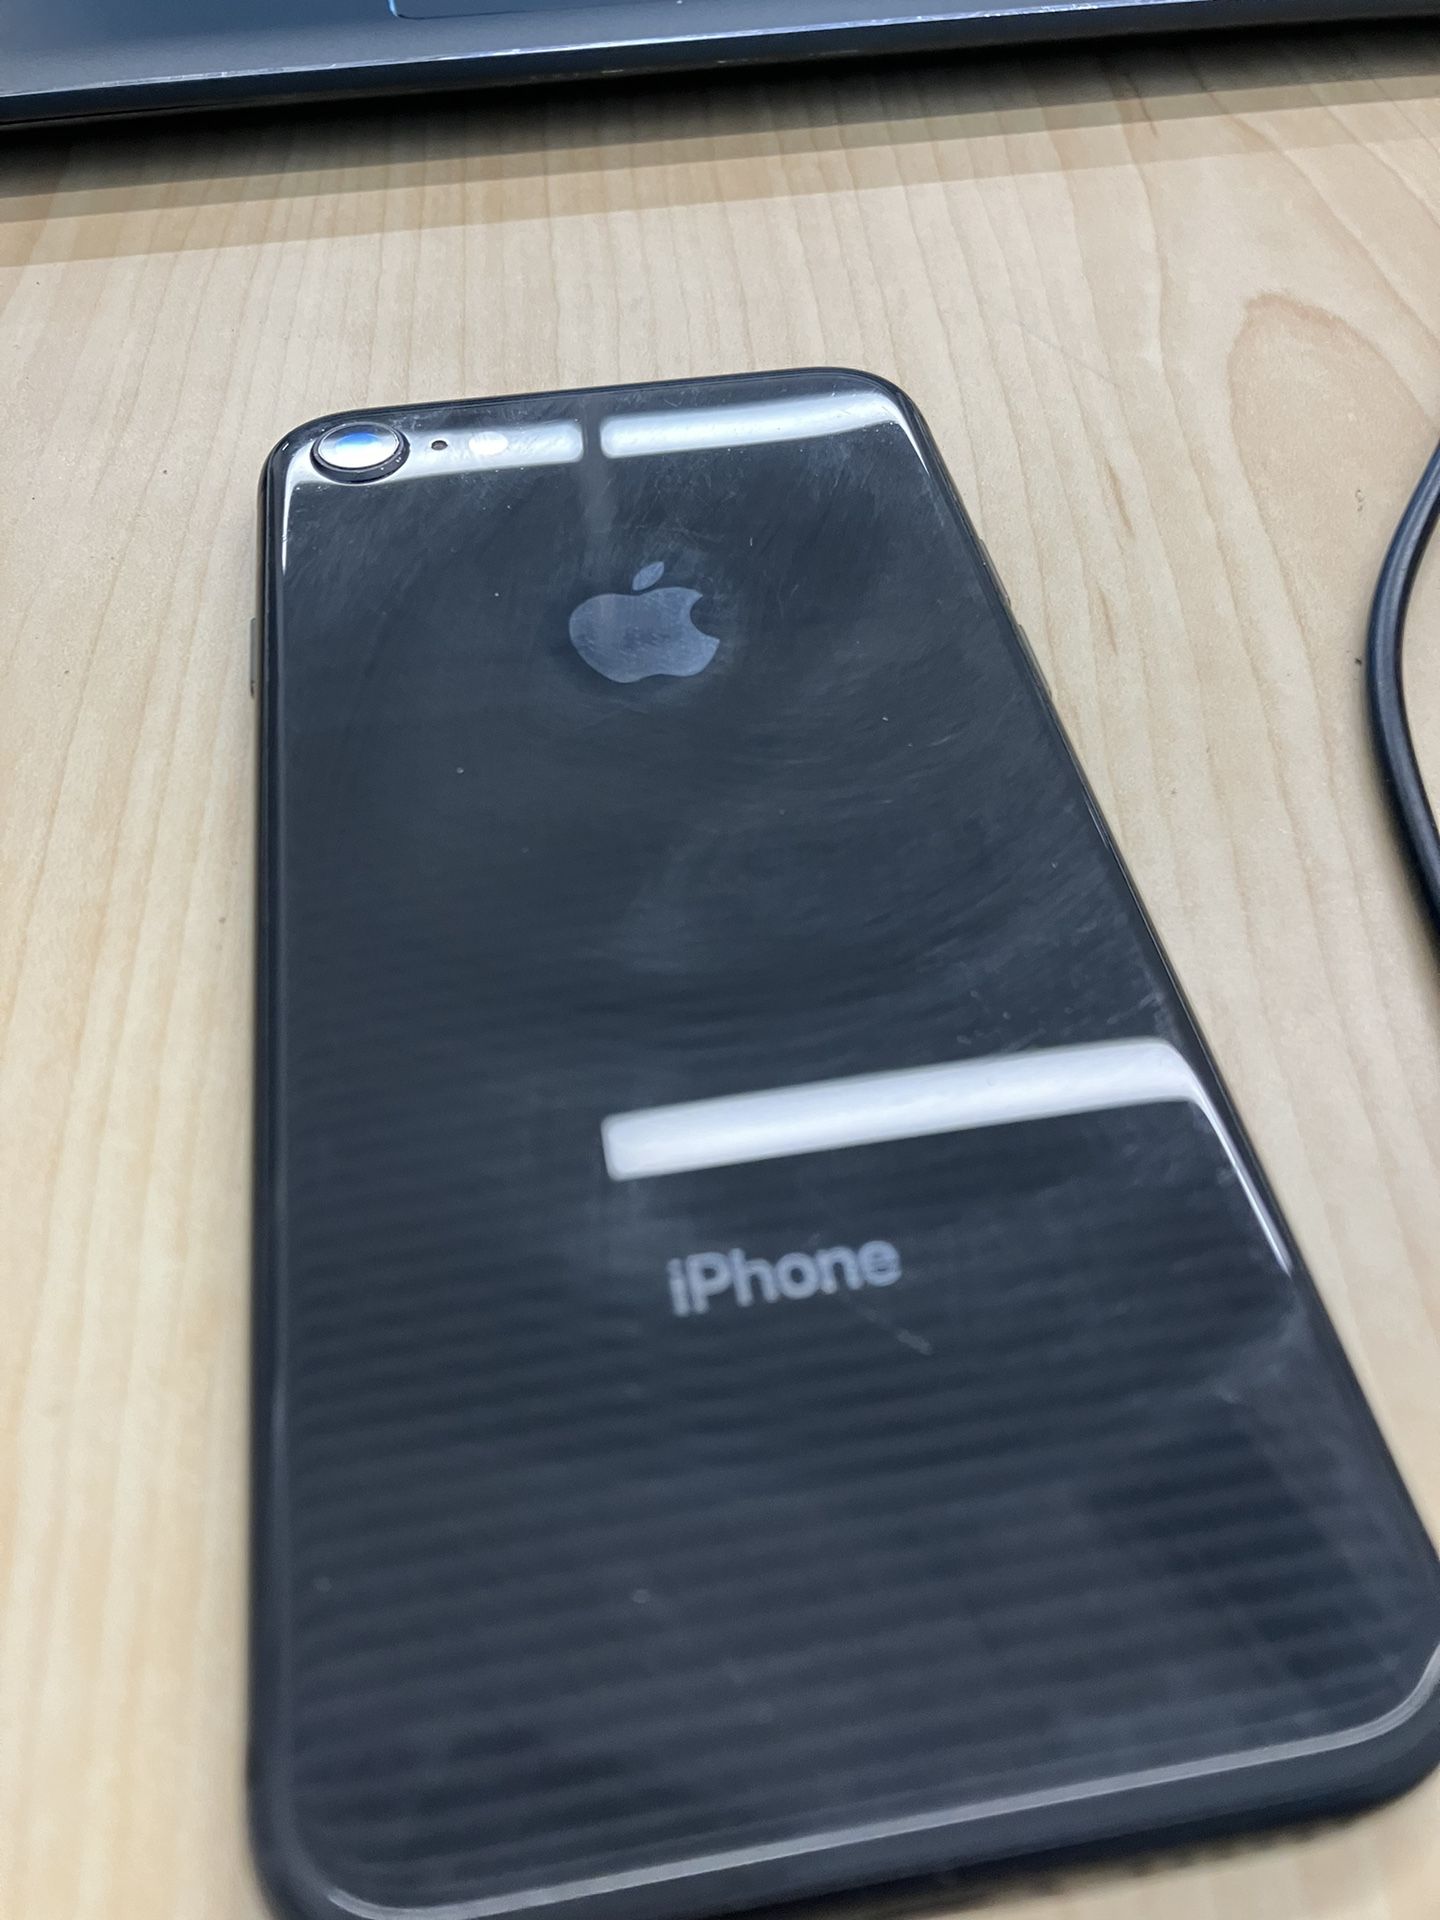 iPhone 8 Grey 64gb $100